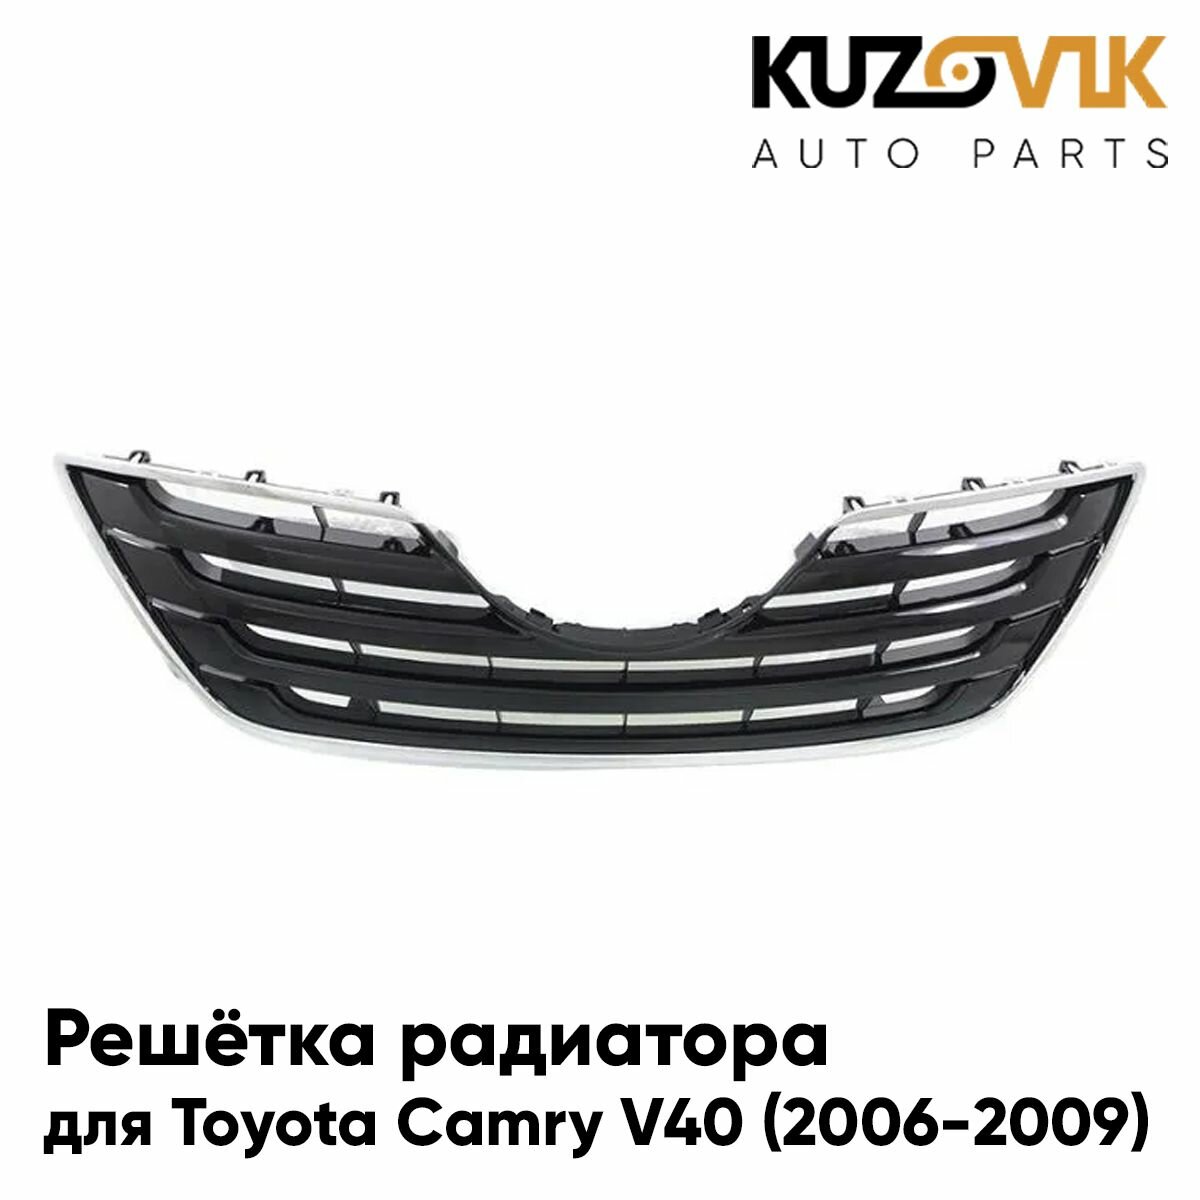 Решётка радиатора для Тойота Камри Toyota Camry V40 (2006-2009) черная с хром обрамлением